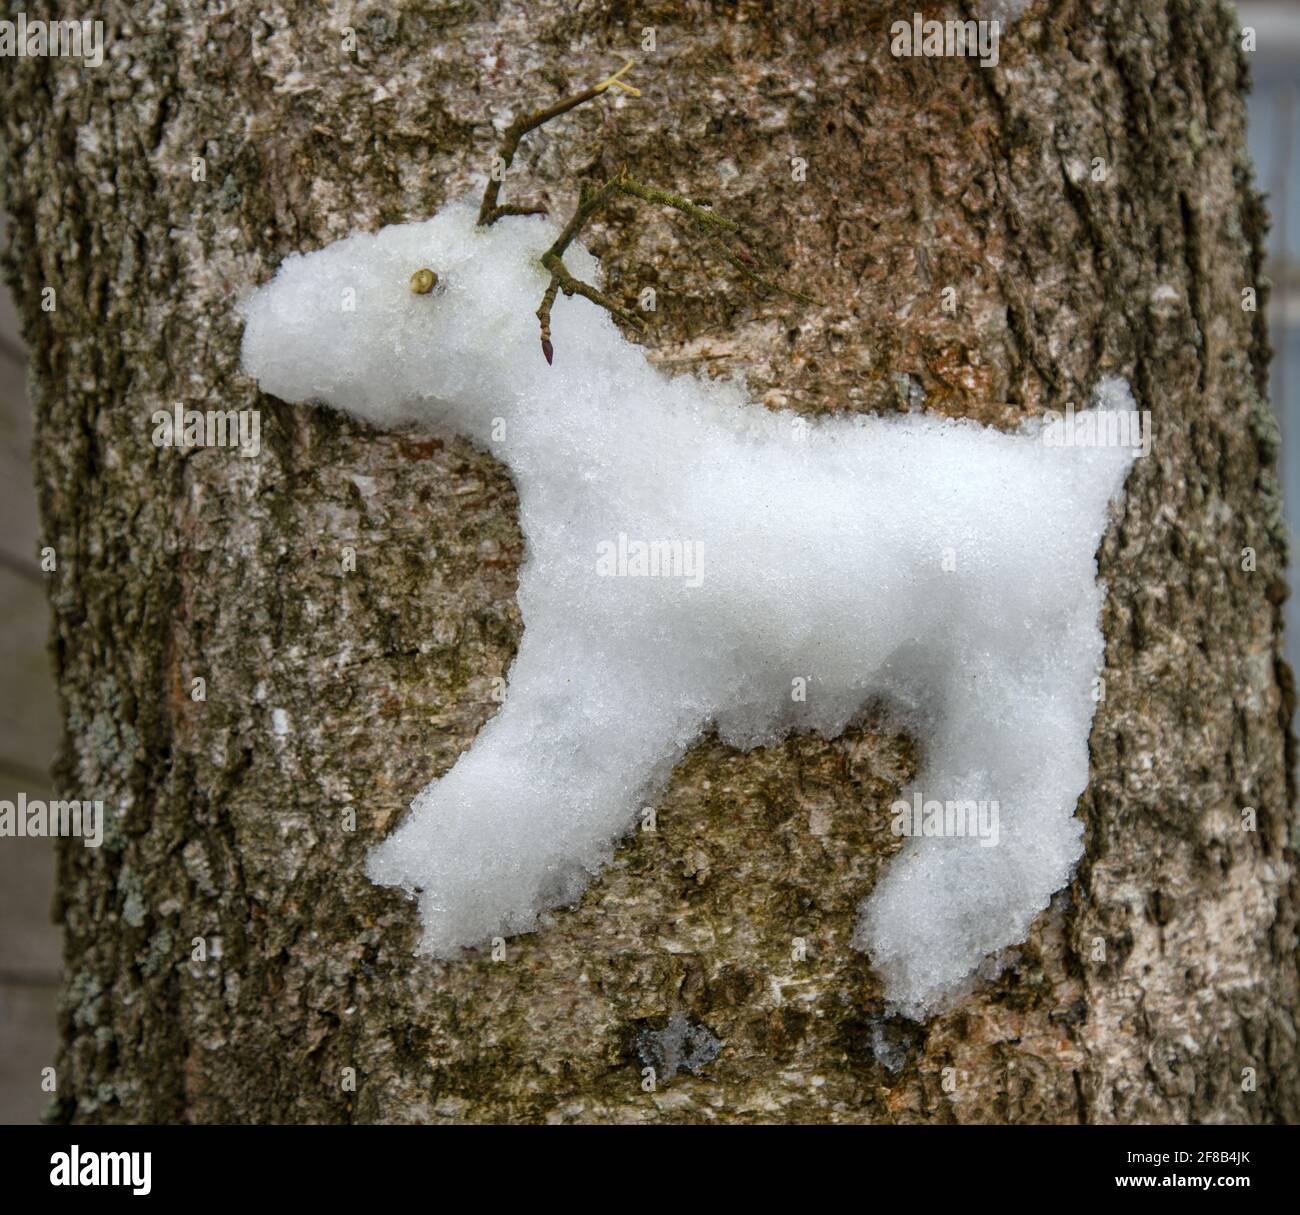 Approche créative des enfants. Les enfants ont coincé une figure de neige d'un renne du Nord sur un arbre (comme un haut relief). Banque D'Images